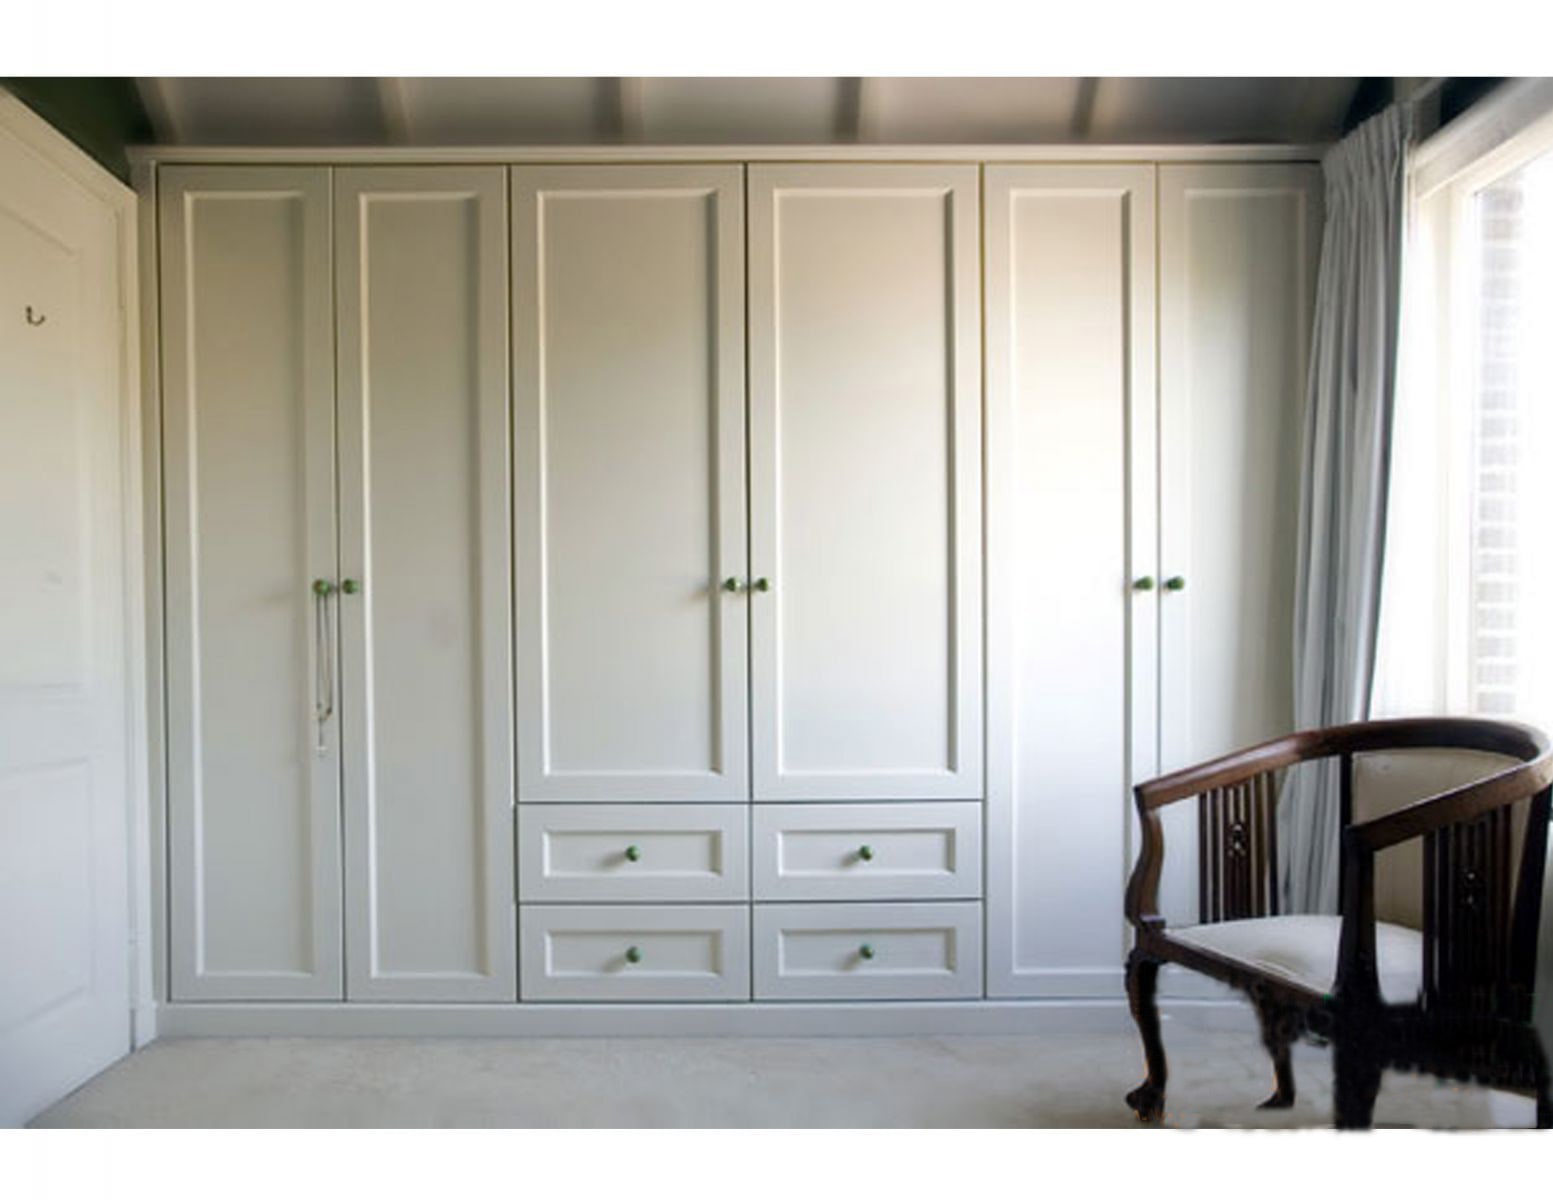 Tủ quần áo gỗ sồi nga sơn trắng là một sản phẩm đẳng cấp và sang trọng cho phòng ngủ của bạn năm